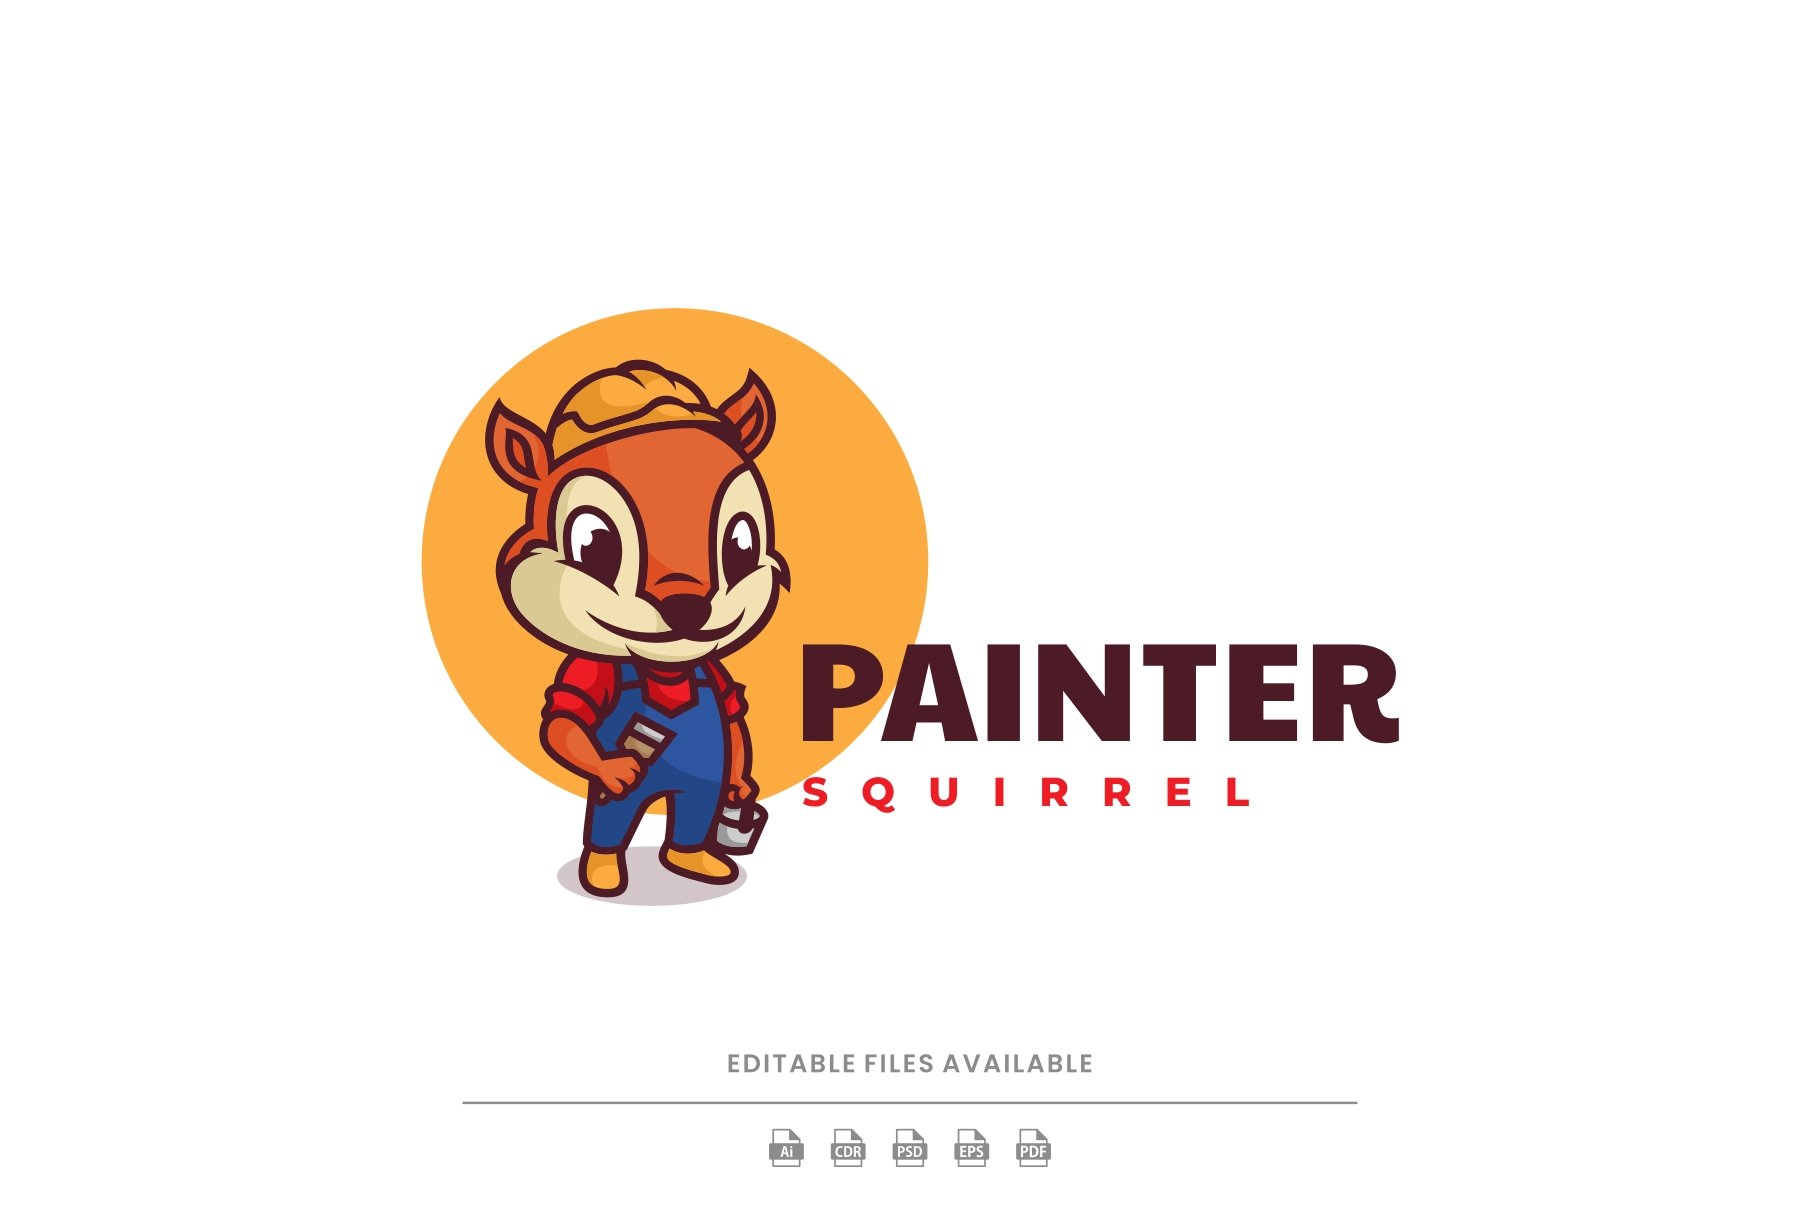 Painter Squirrel Cartoon Logo cover image.